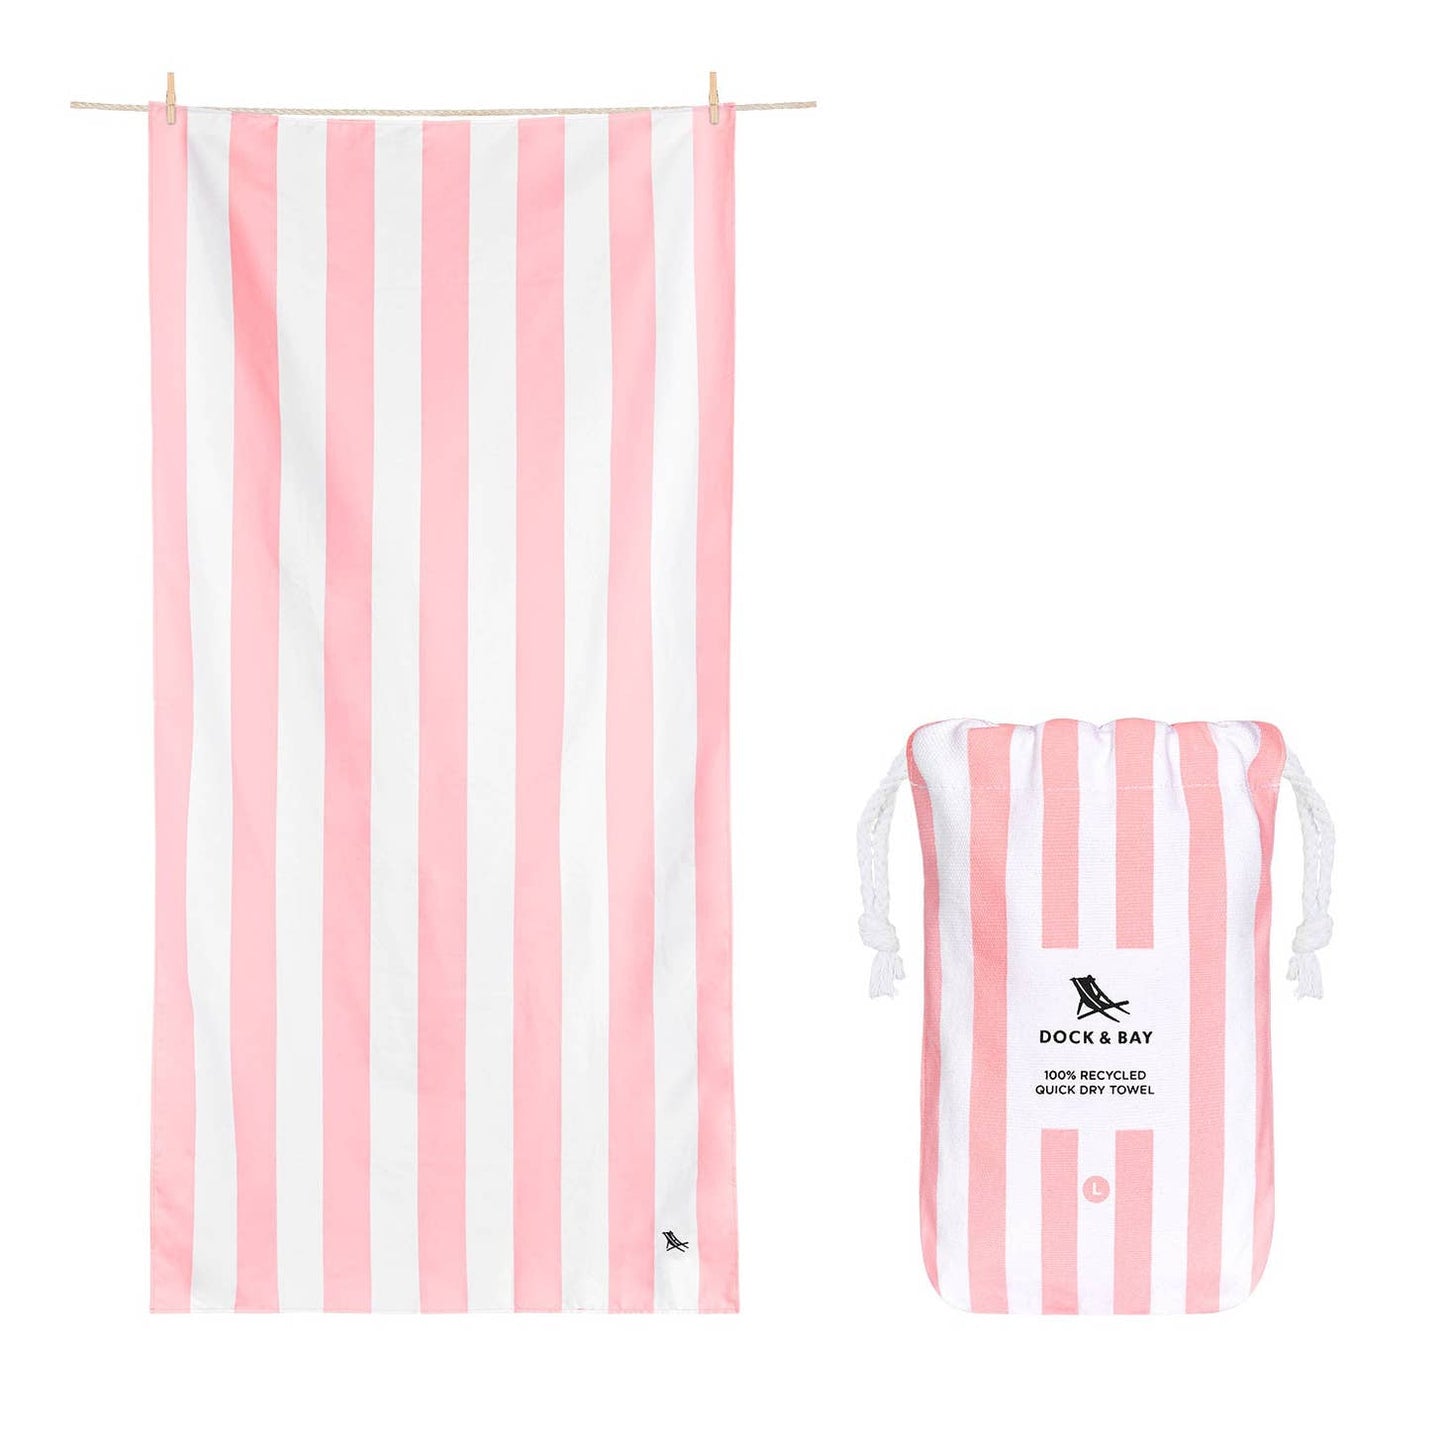 Striped Quick Dry Towels - Malibu Pink